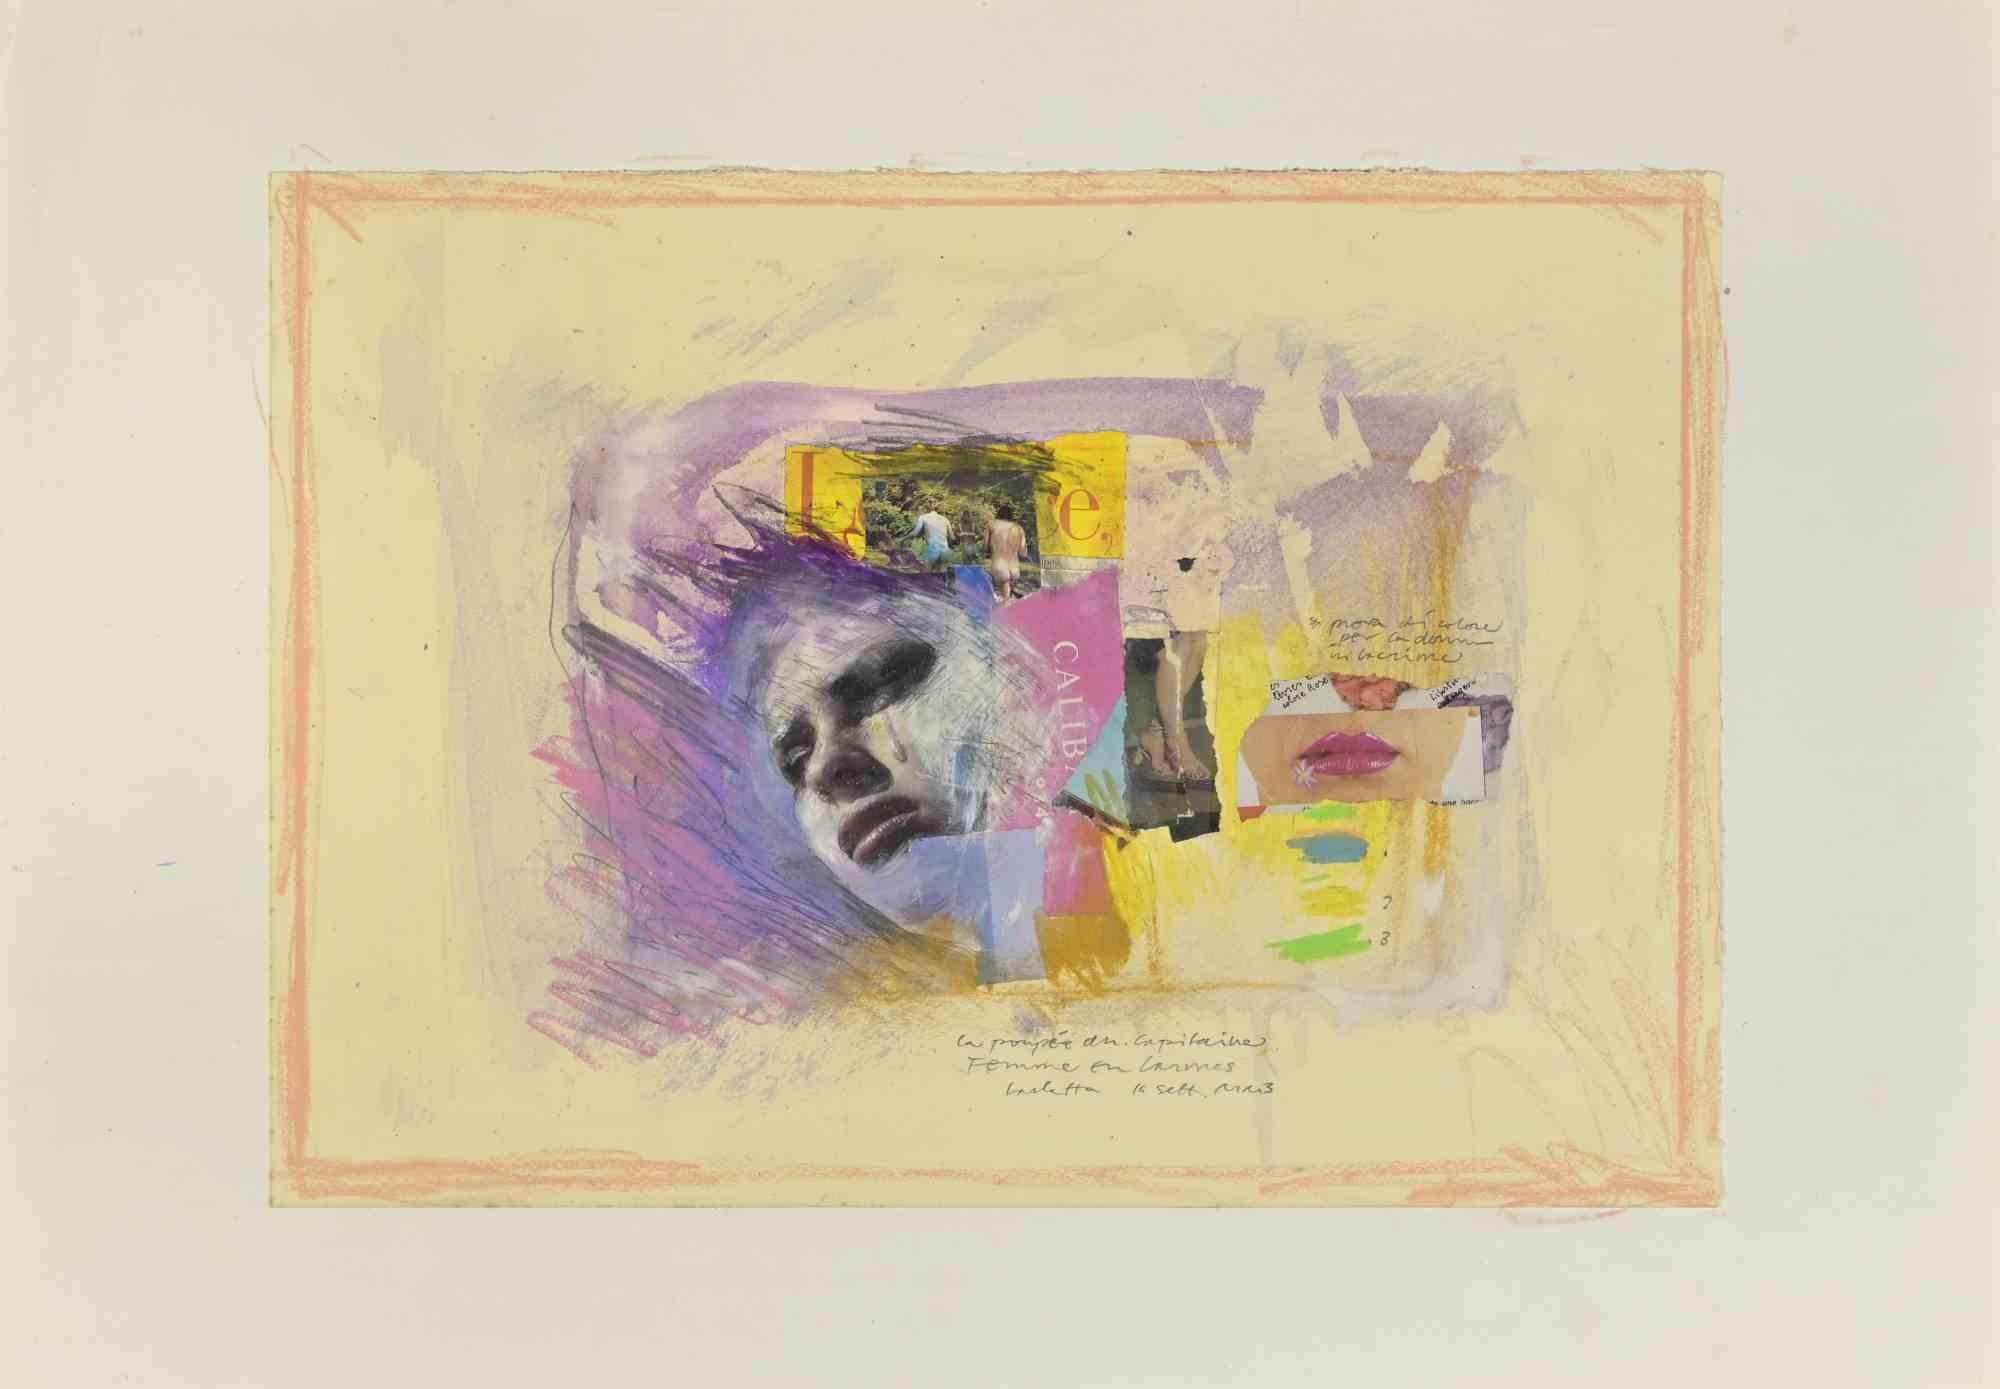 Femme en Larmes est une œuvre d'art mixte, réalisée par Sergio Barletta en 1993.

Pastel, aquarelle et collage sur carton, appliqué sur un passepartout blanc. 50x 70 cm.

Signé à la main dans la marge inférieure. 

Bonnes conditions.

Sergio